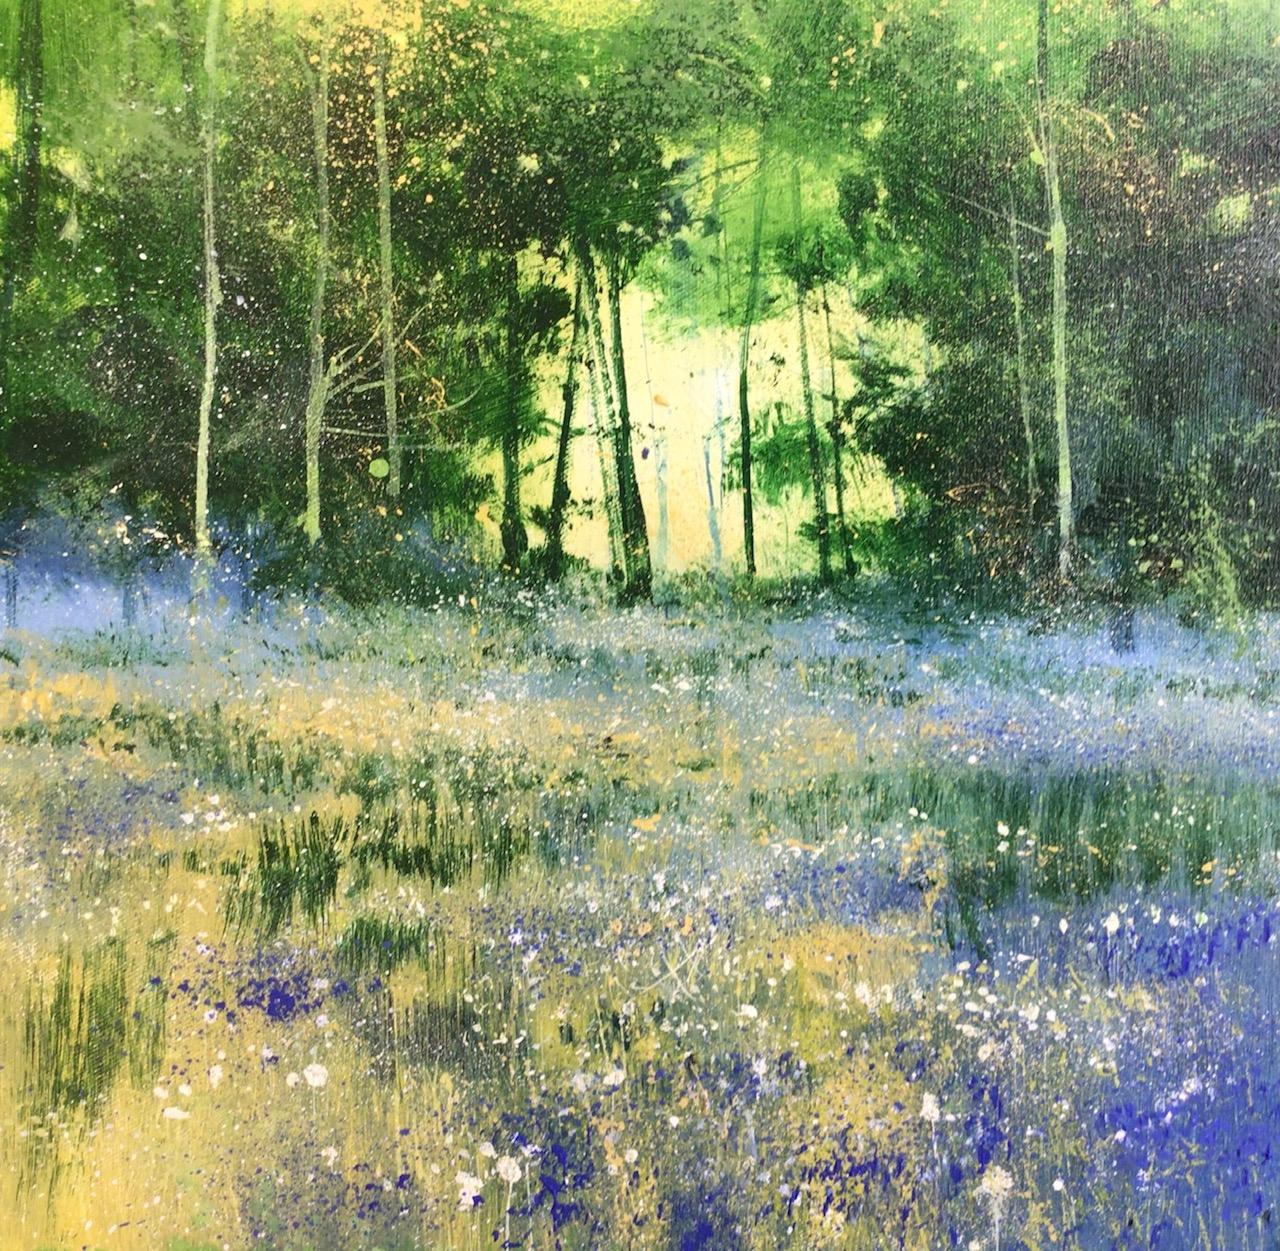 Forest Morning - landscape nature oil painting impression realism Modern Artwork